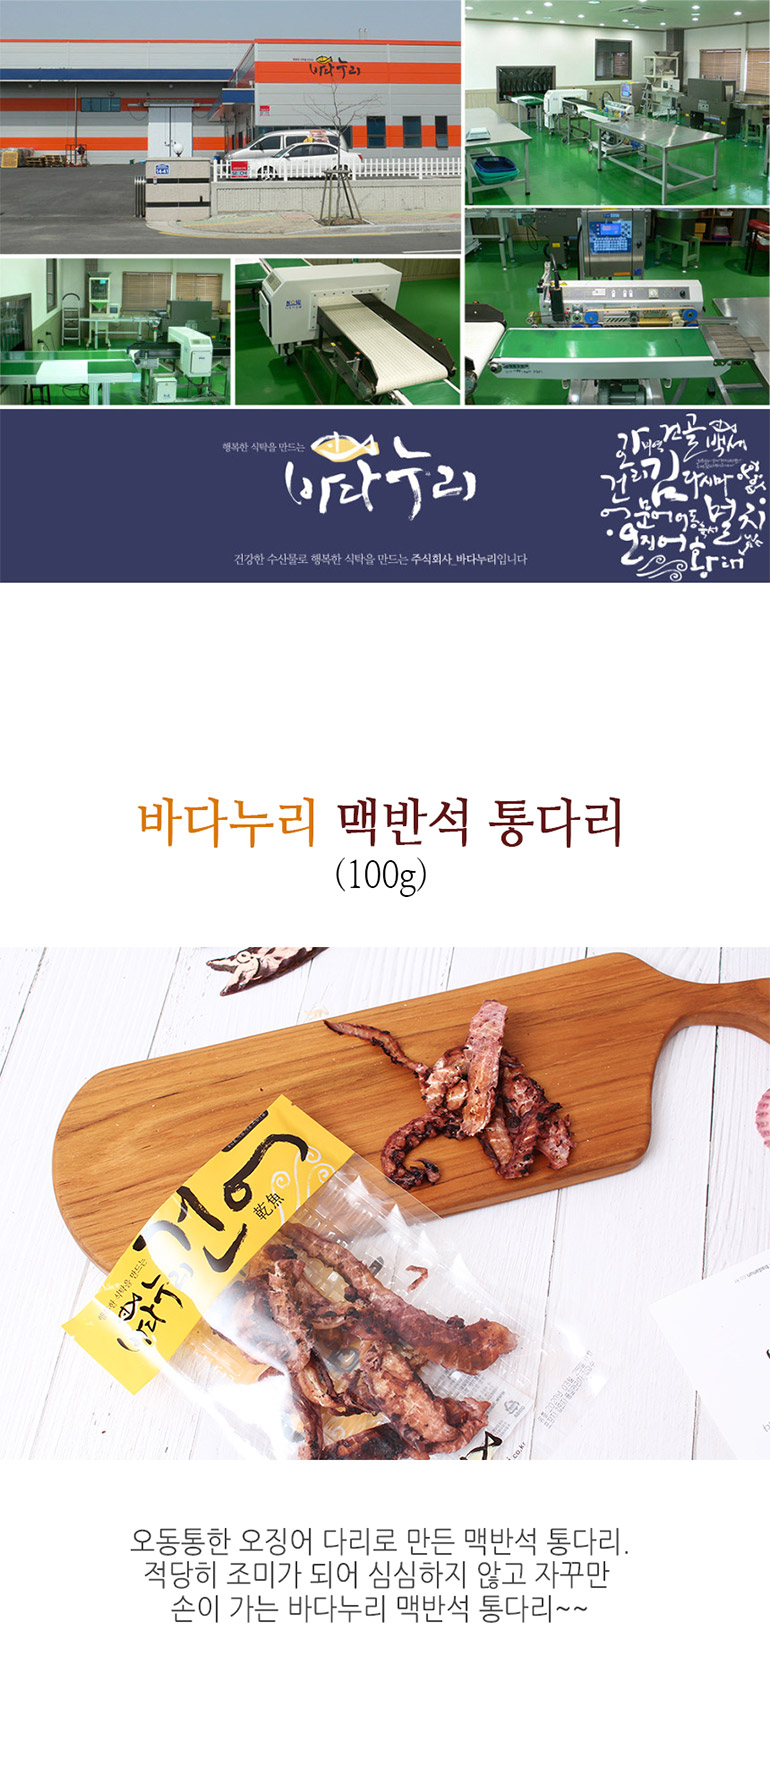 韓國食品-[바다누리] 맥반석통다리 100g